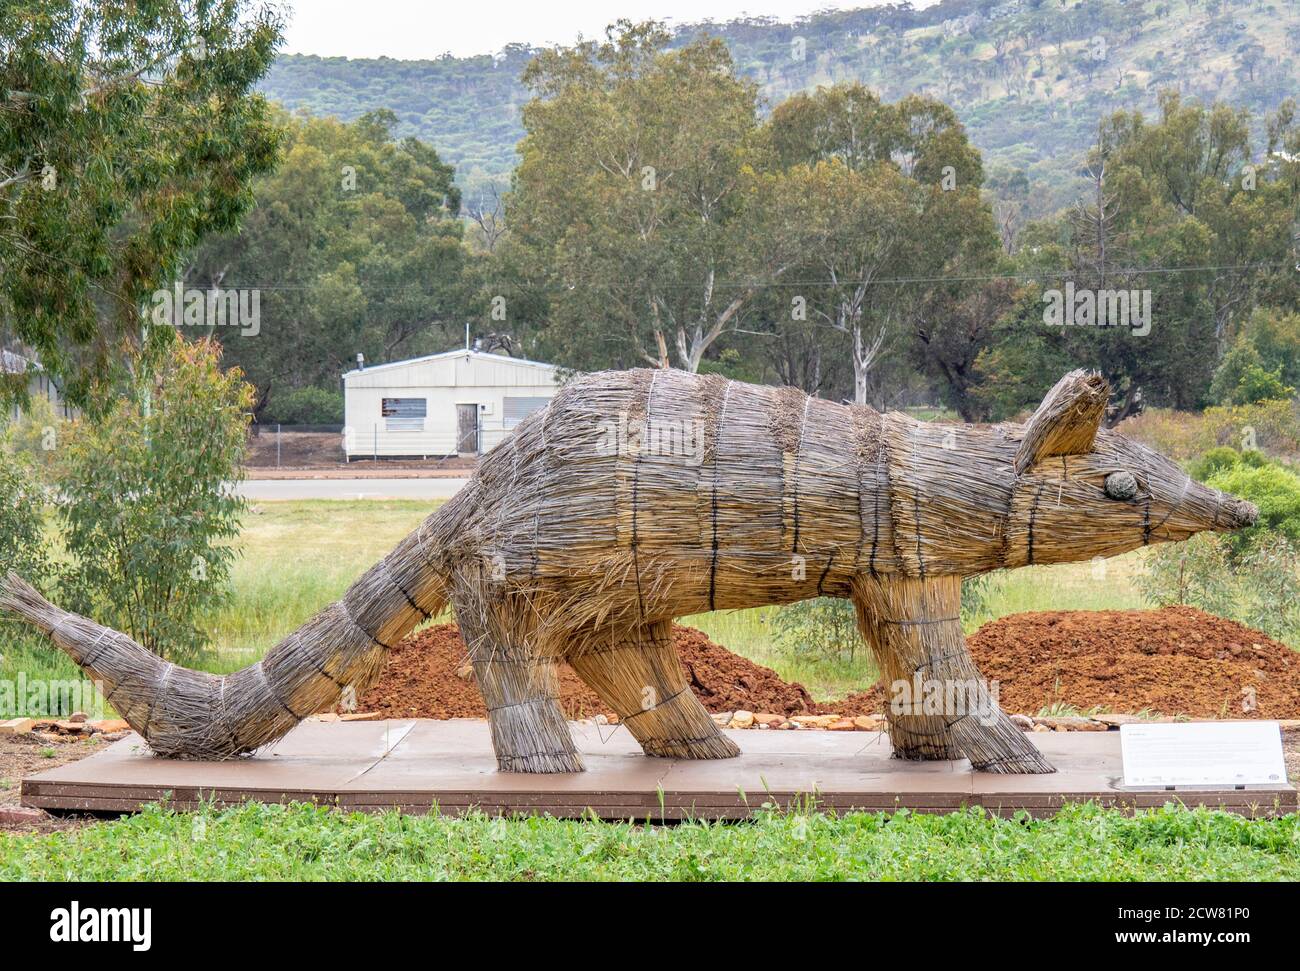 Sculpture de paille de blé de numbat conçue par Shingo Miyajima et Masaharu Noguchi Wara art Trail York Australie occidentale. Banque D'Images